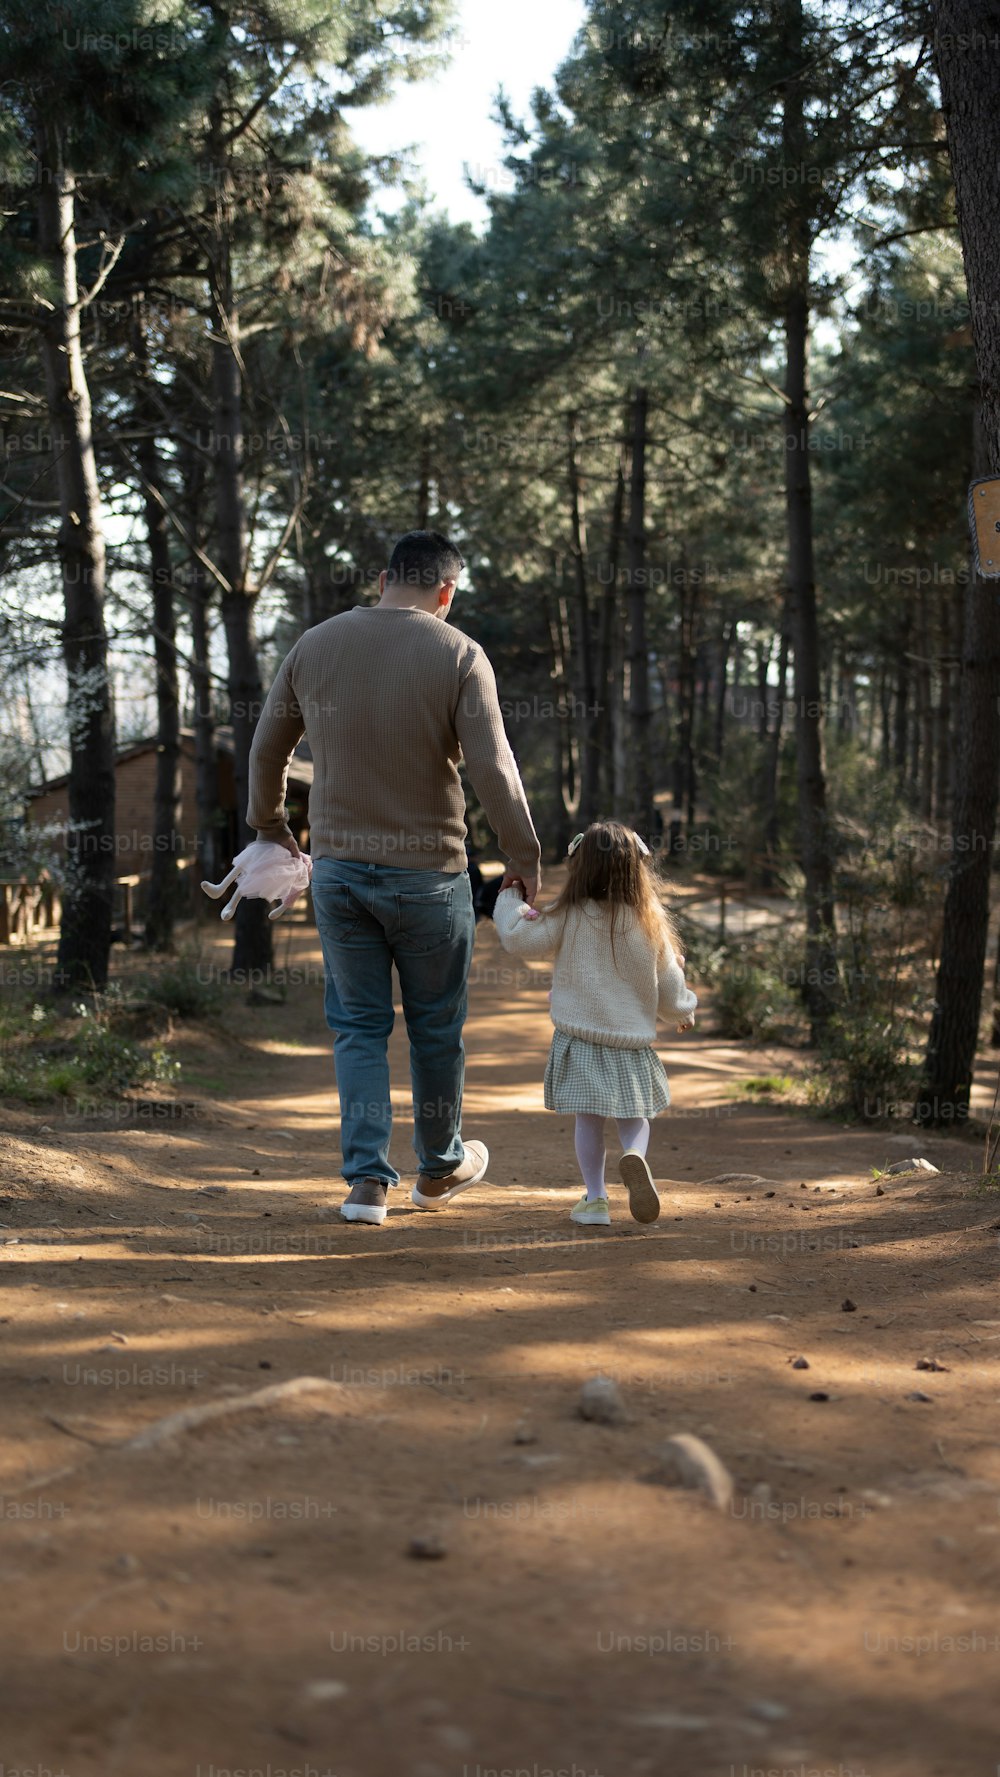 Un homme et une petite fille marchant sur un chemin de terre